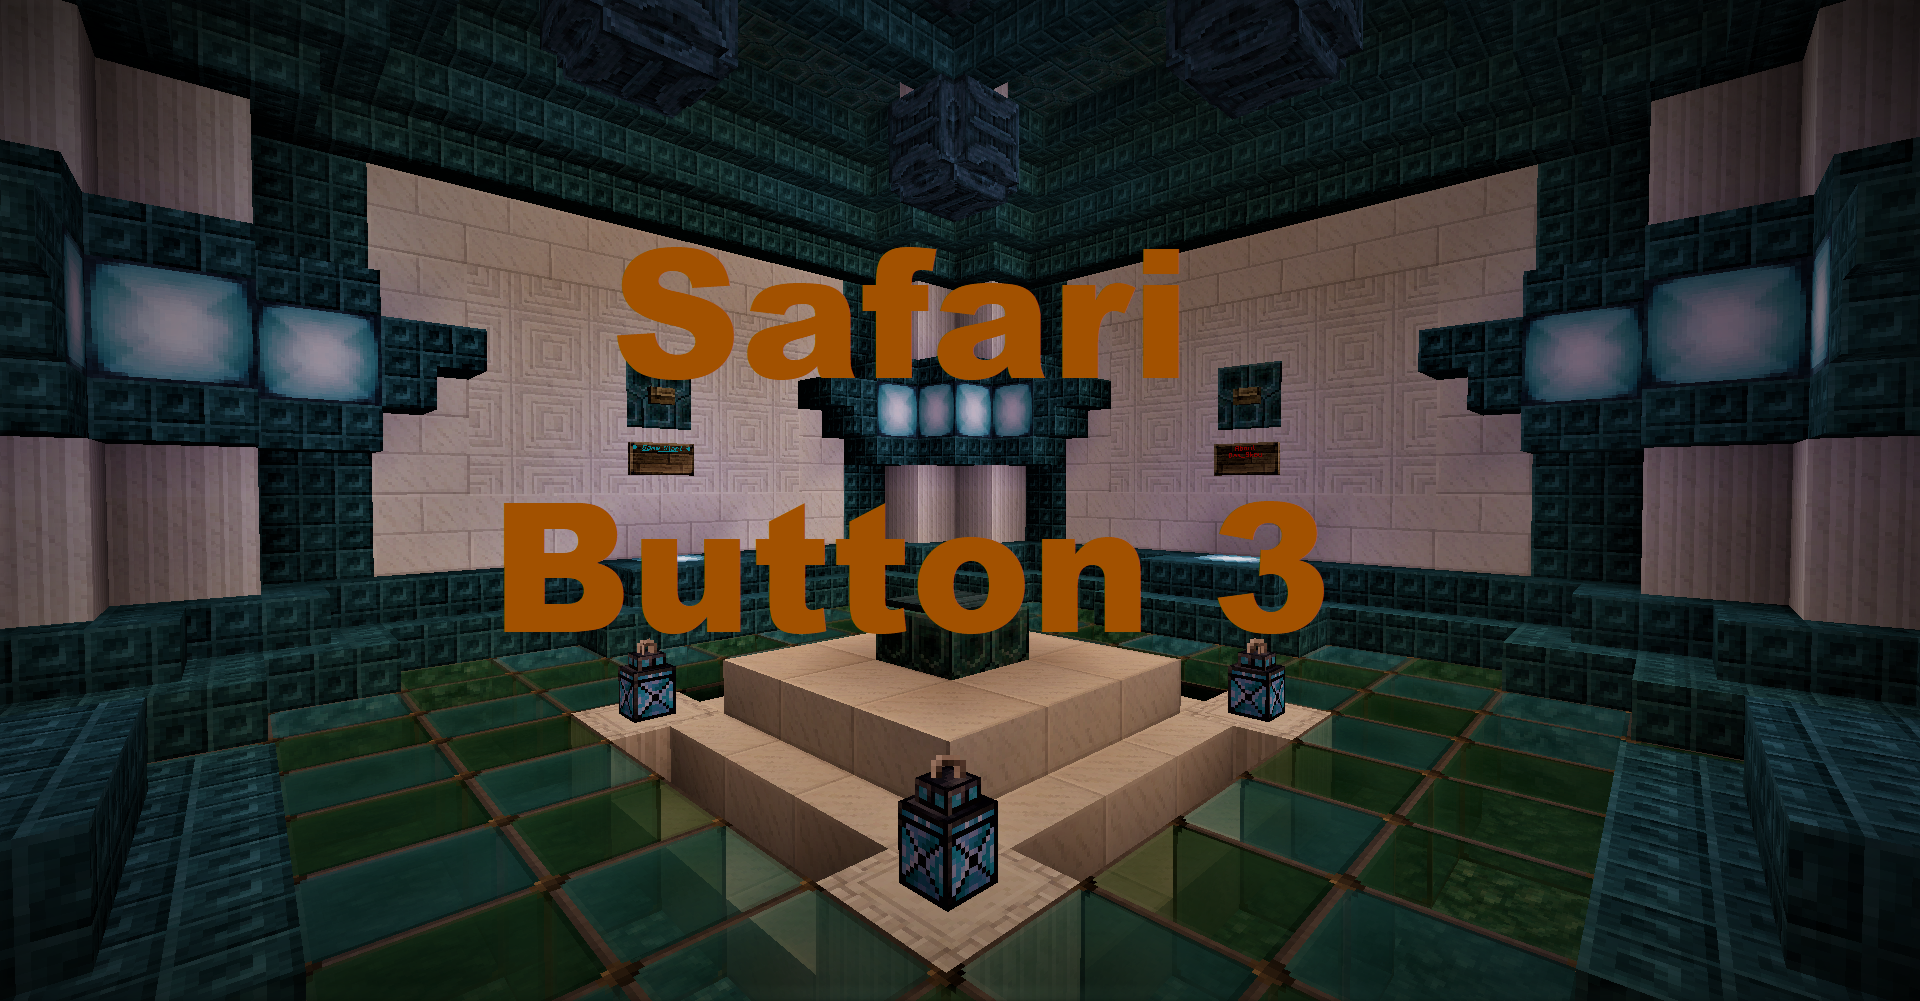 Descargar Safari Button 3 para Minecraft 1.16.4